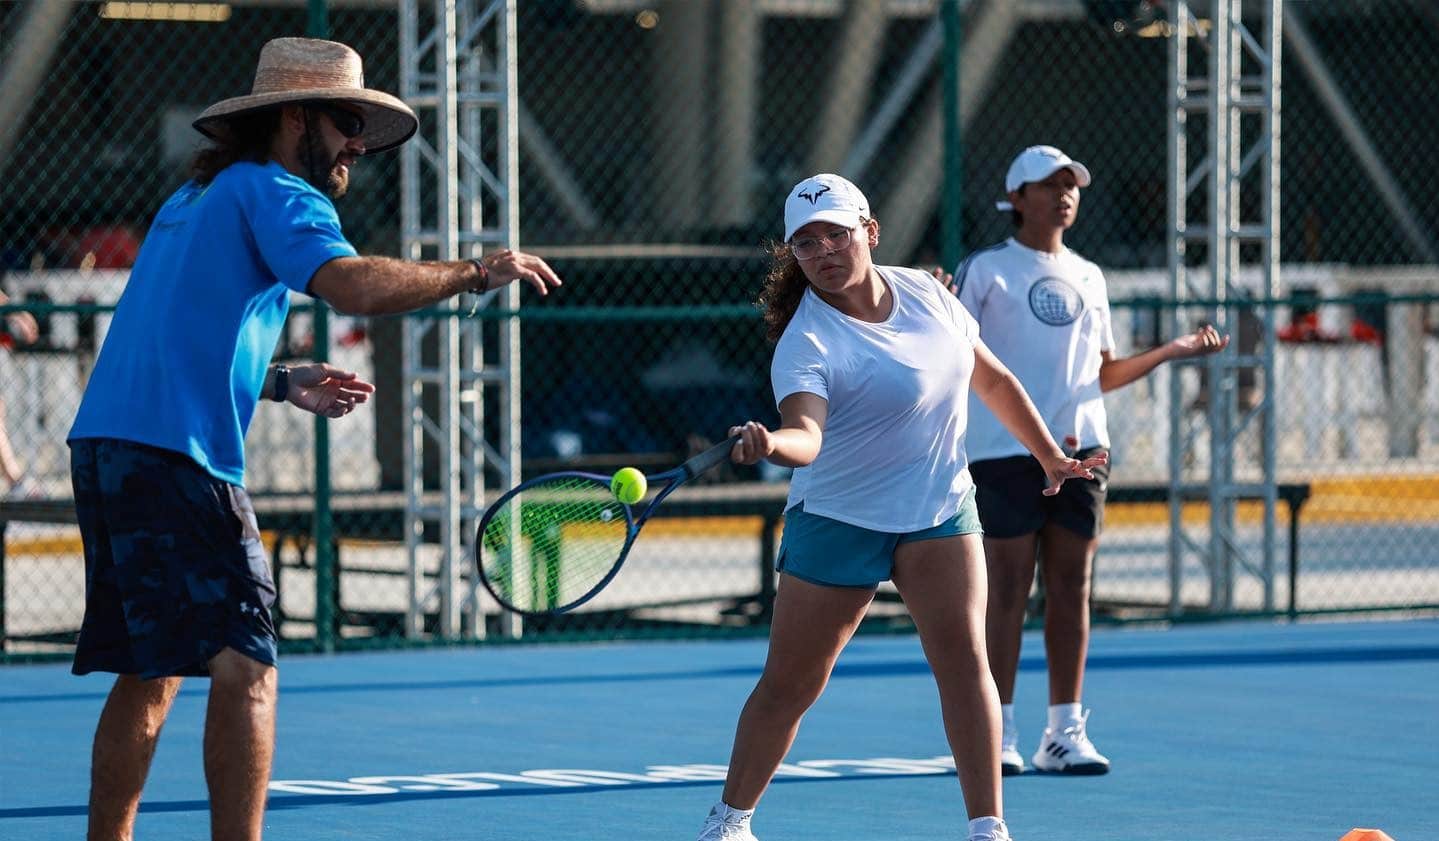 ¿Quieres aprender tenis? Hazlo en este curso en Acapulco